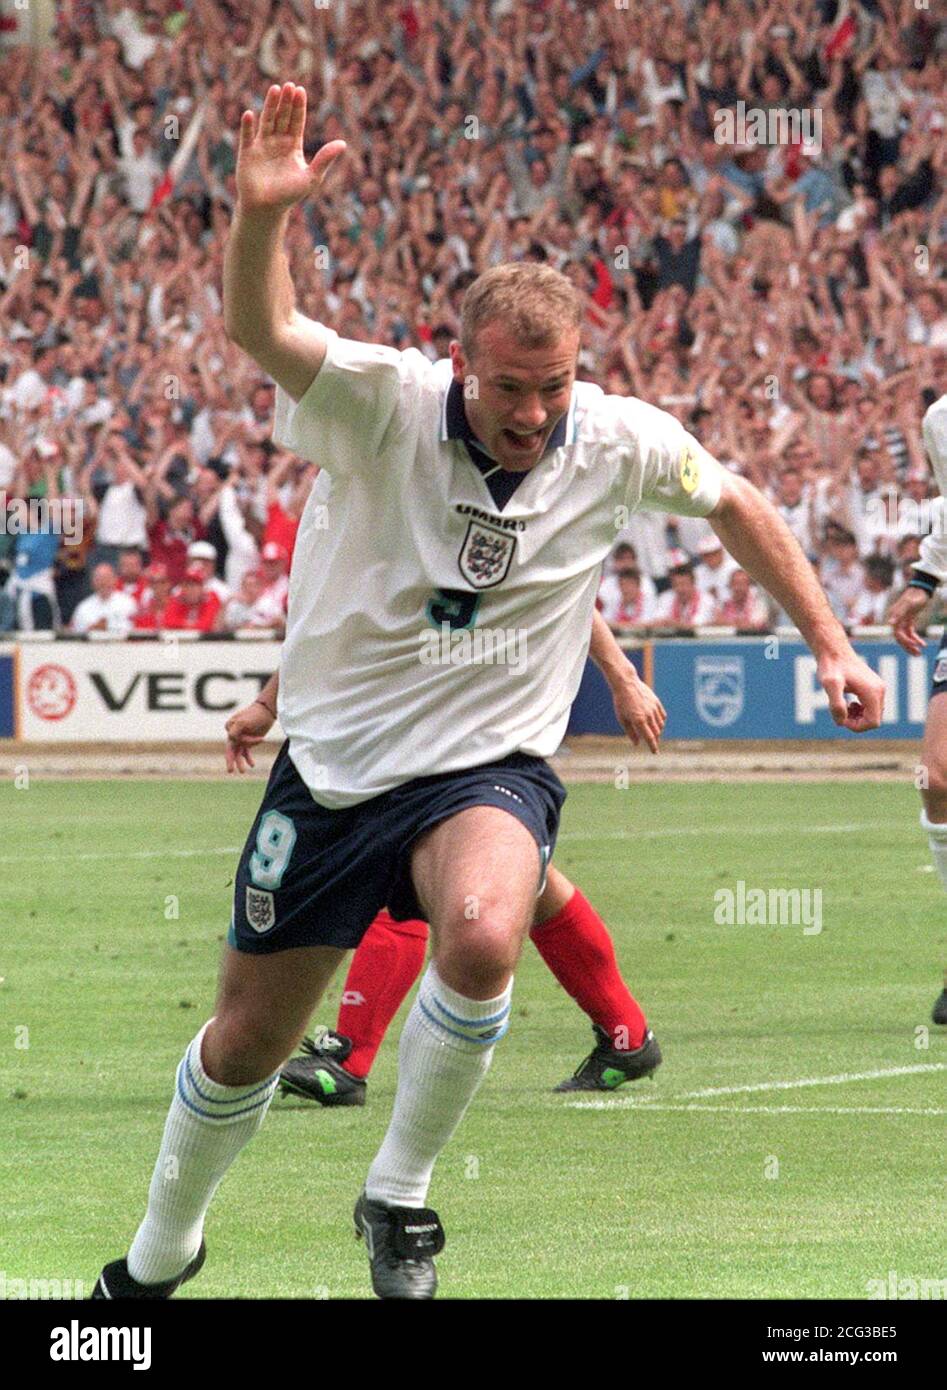 Alan Shearer feiert nach seinem Eröffnungstreffer im heutigen (Samstag)  Euro 96 Spiel gegen die Schweiz, in Wembley. Am 12.1.96, die England und  Newcastle Stürmer startete die neue England Heimtrikot inmitten eines Sturms